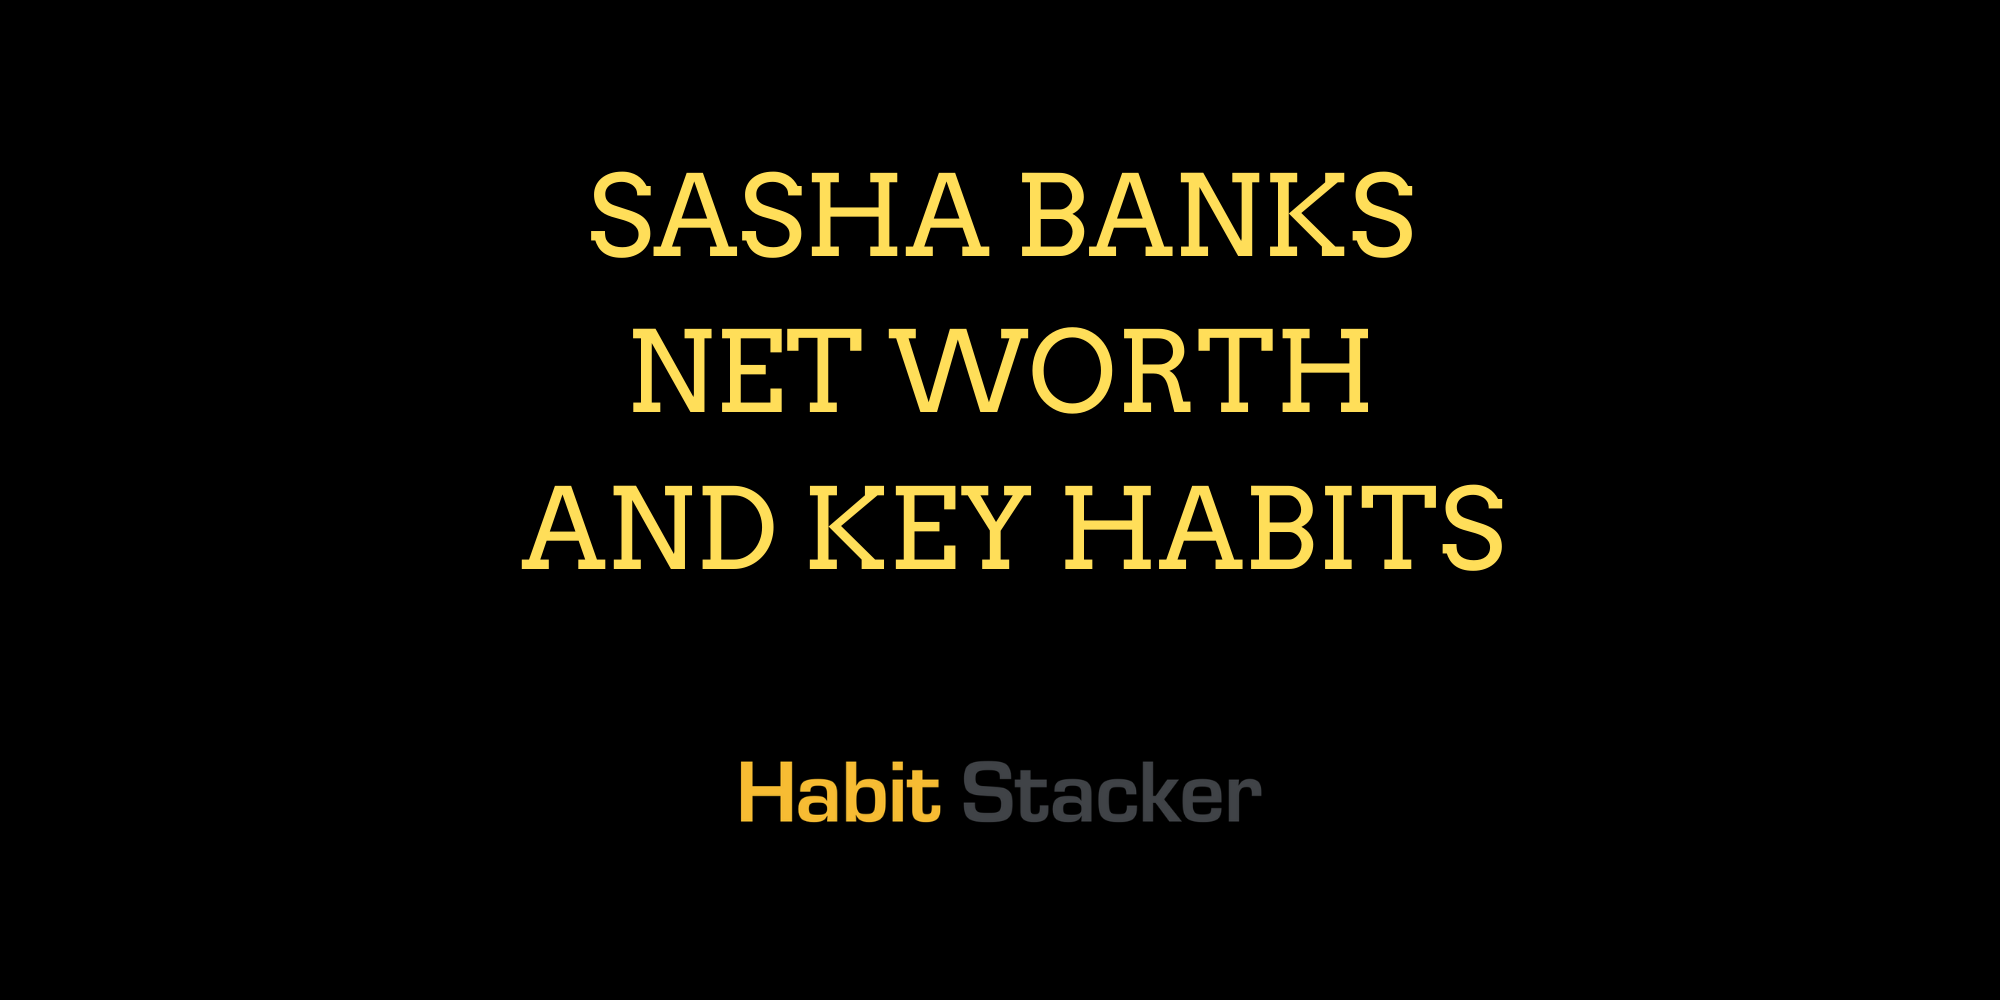 Sasha Banks Net Worth and Key Habits